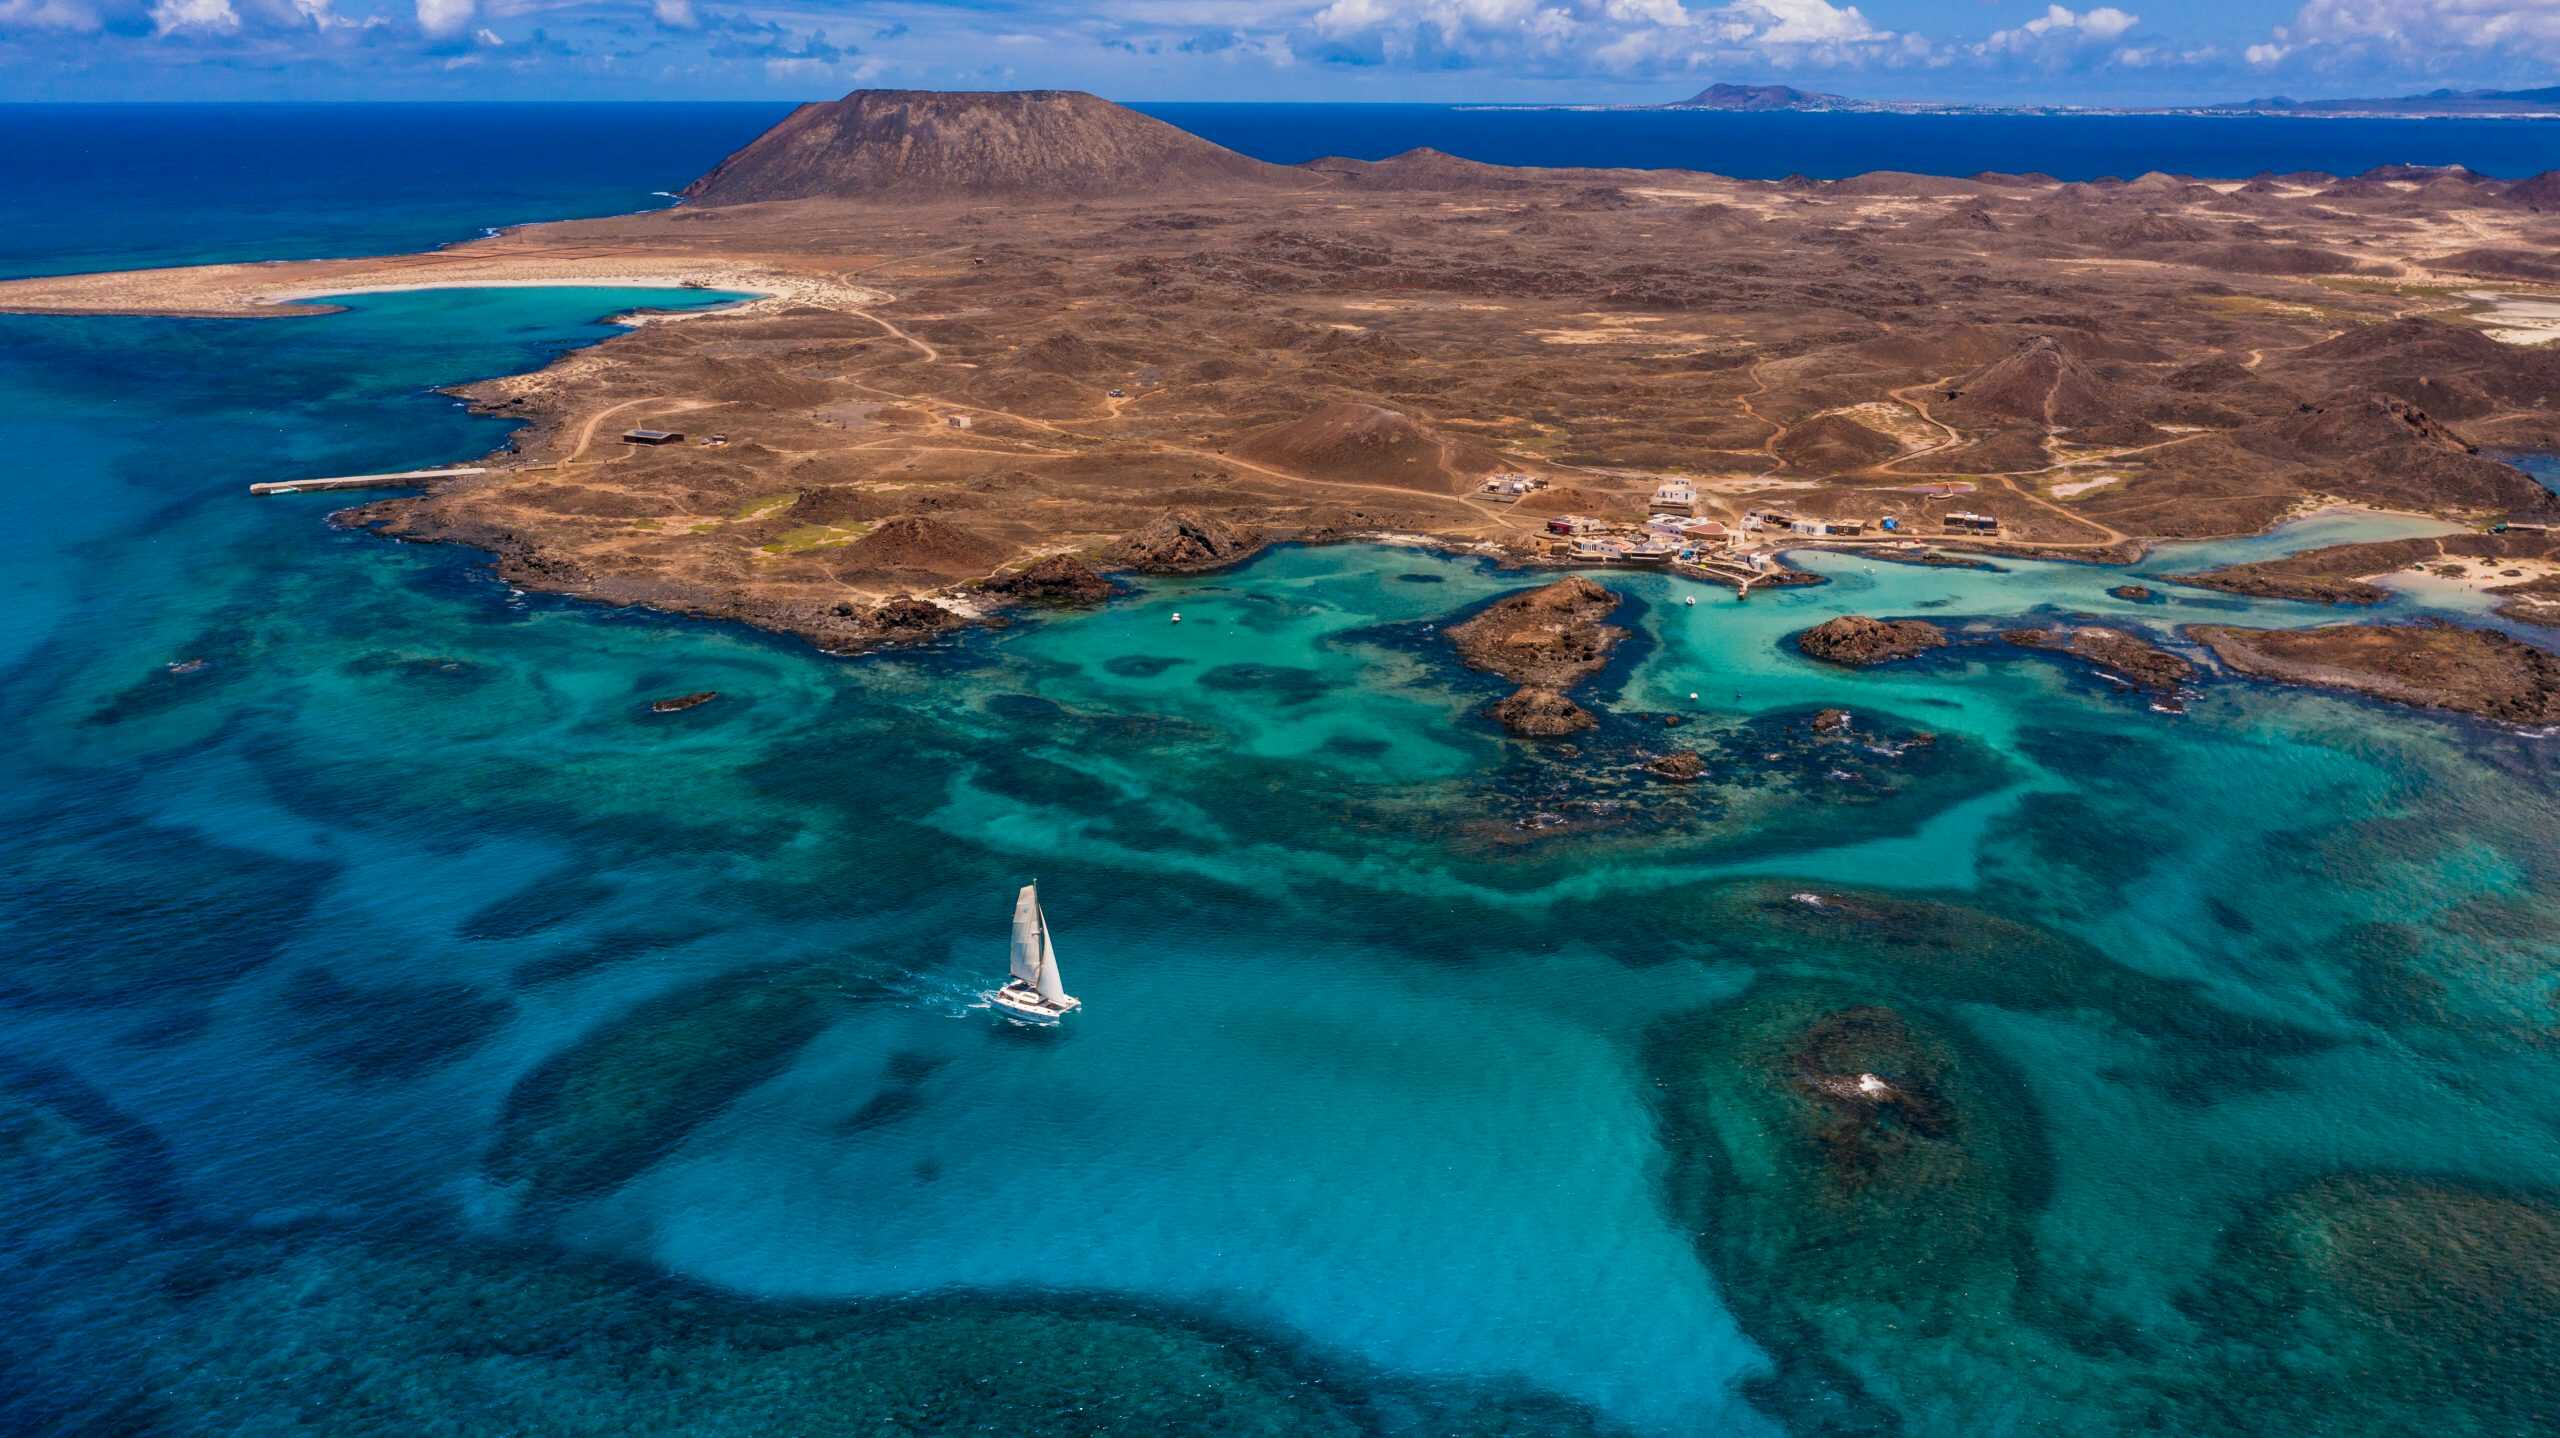 Fuerteventura vista desde el aire donde se aprecia el litoral de aguas cristalinas donde navega un catamarán